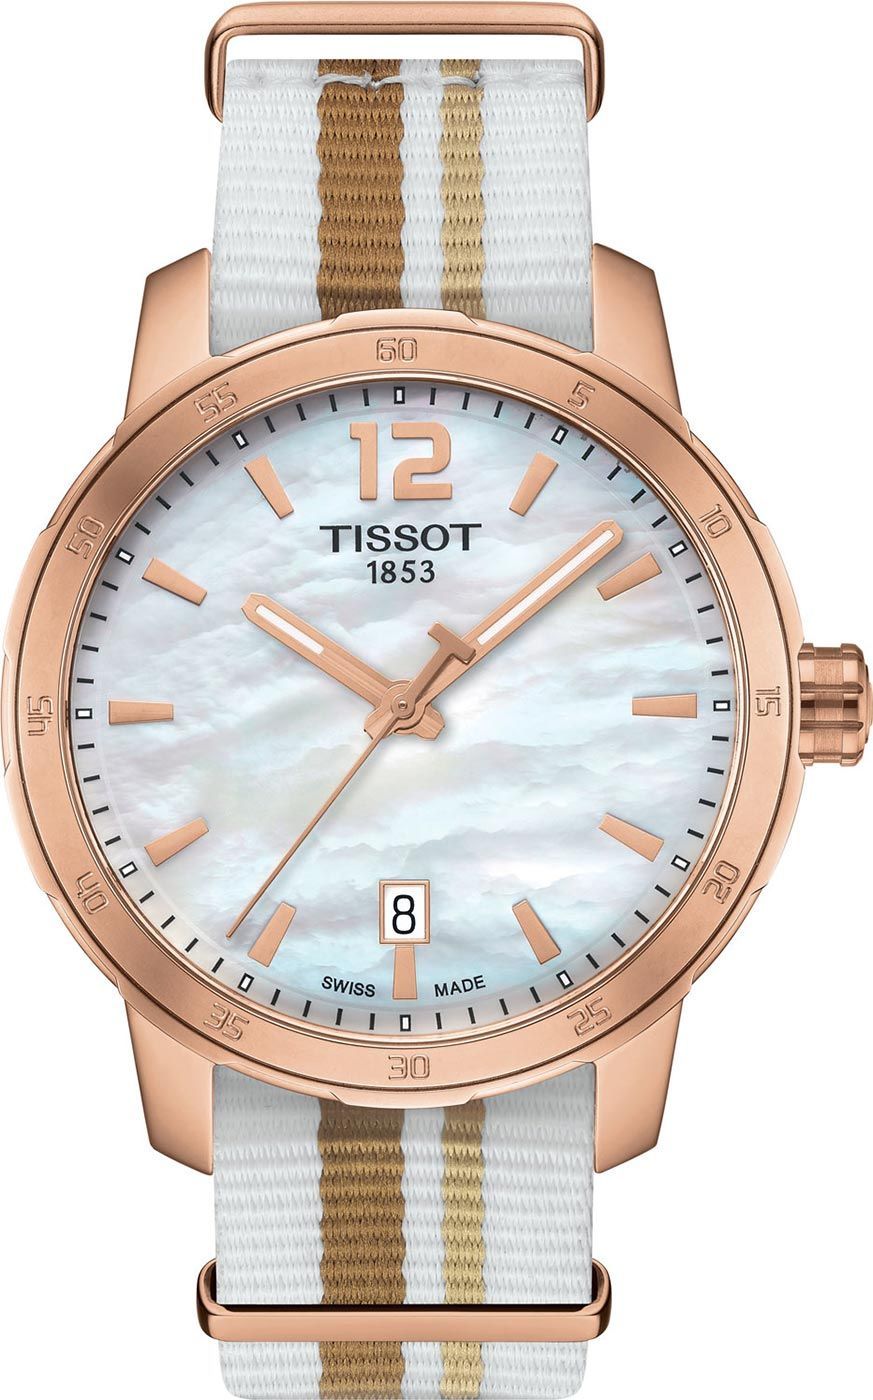 Tissot T-Sport Quickster MOP Dial 40 mm Quartz Watch For Men - 1